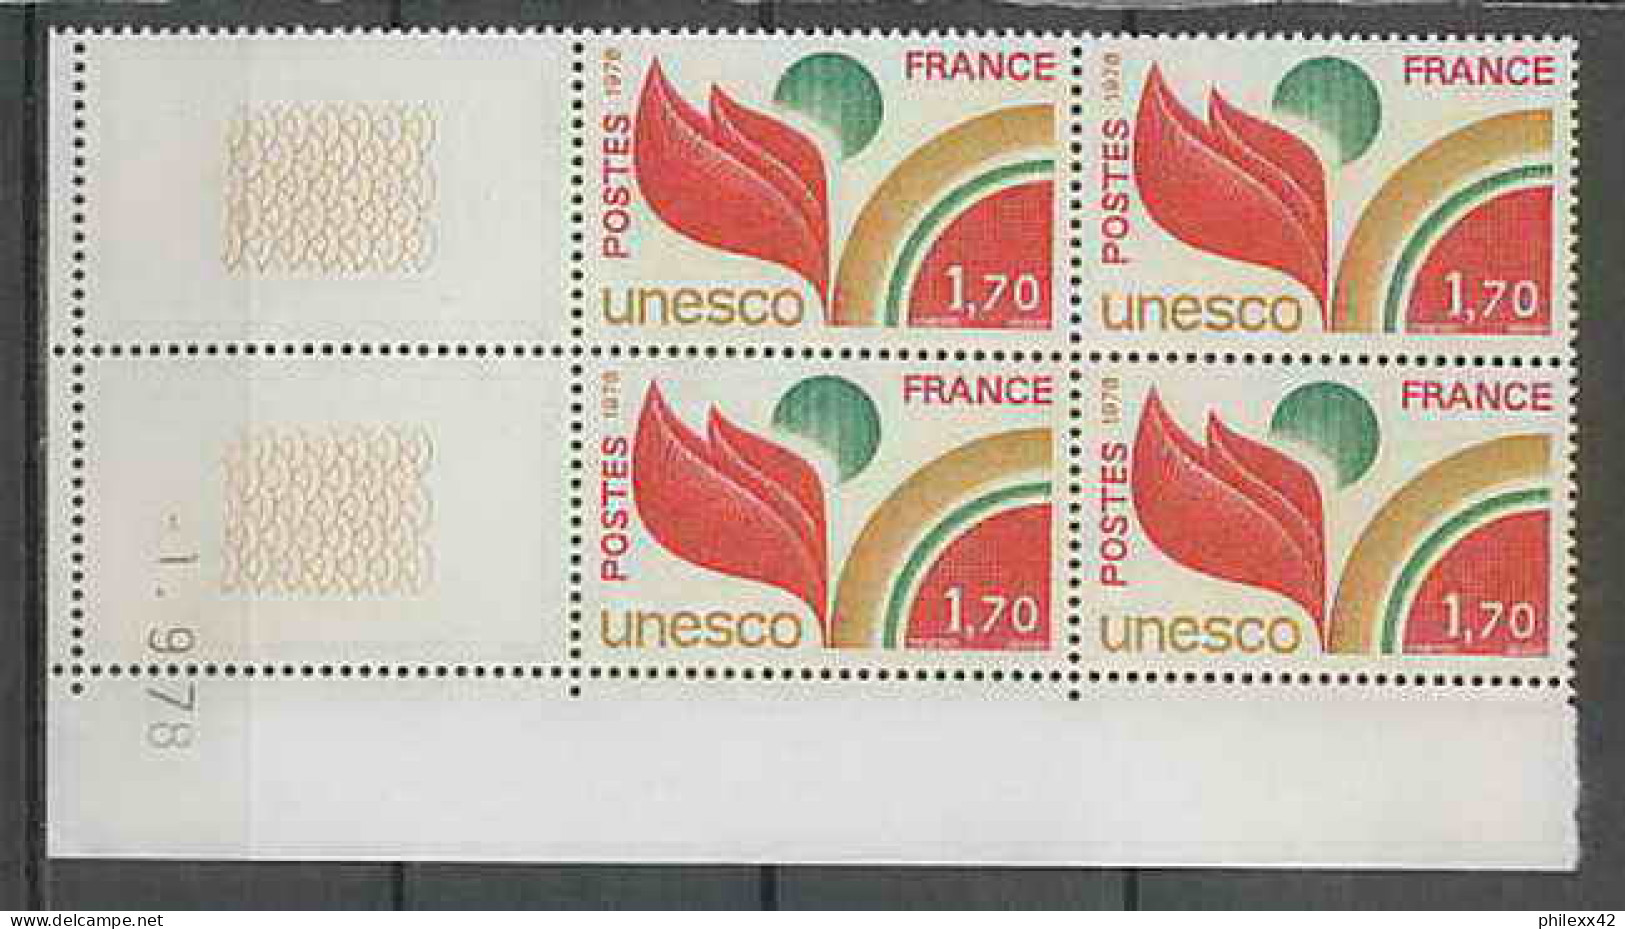 1301 - France - Coin Daté TB Neuf ** Service Unesco N°57 Date 1/9/1976 Sans Trait  - Officials